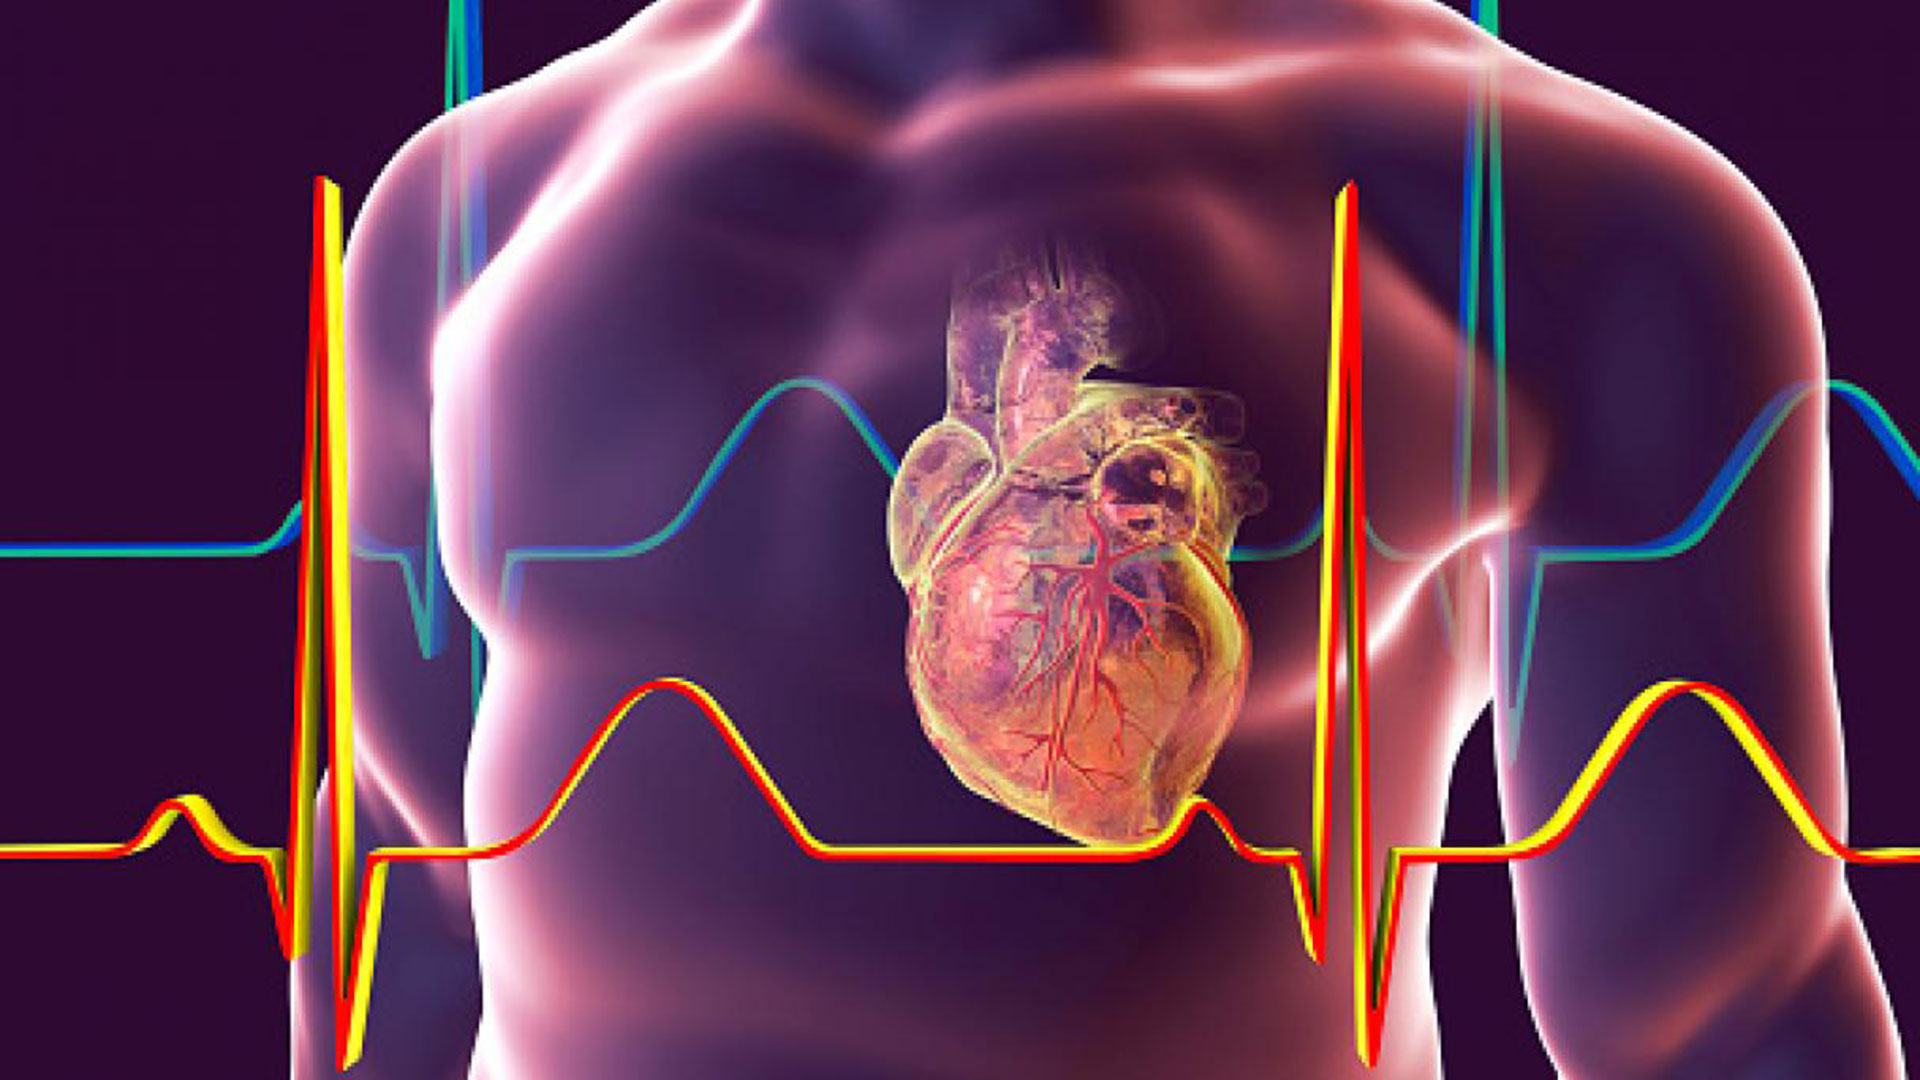 Pacientes hospitalizados sugieren que el COVID-19 afecta de manera objetiva el sistema cardiovascular